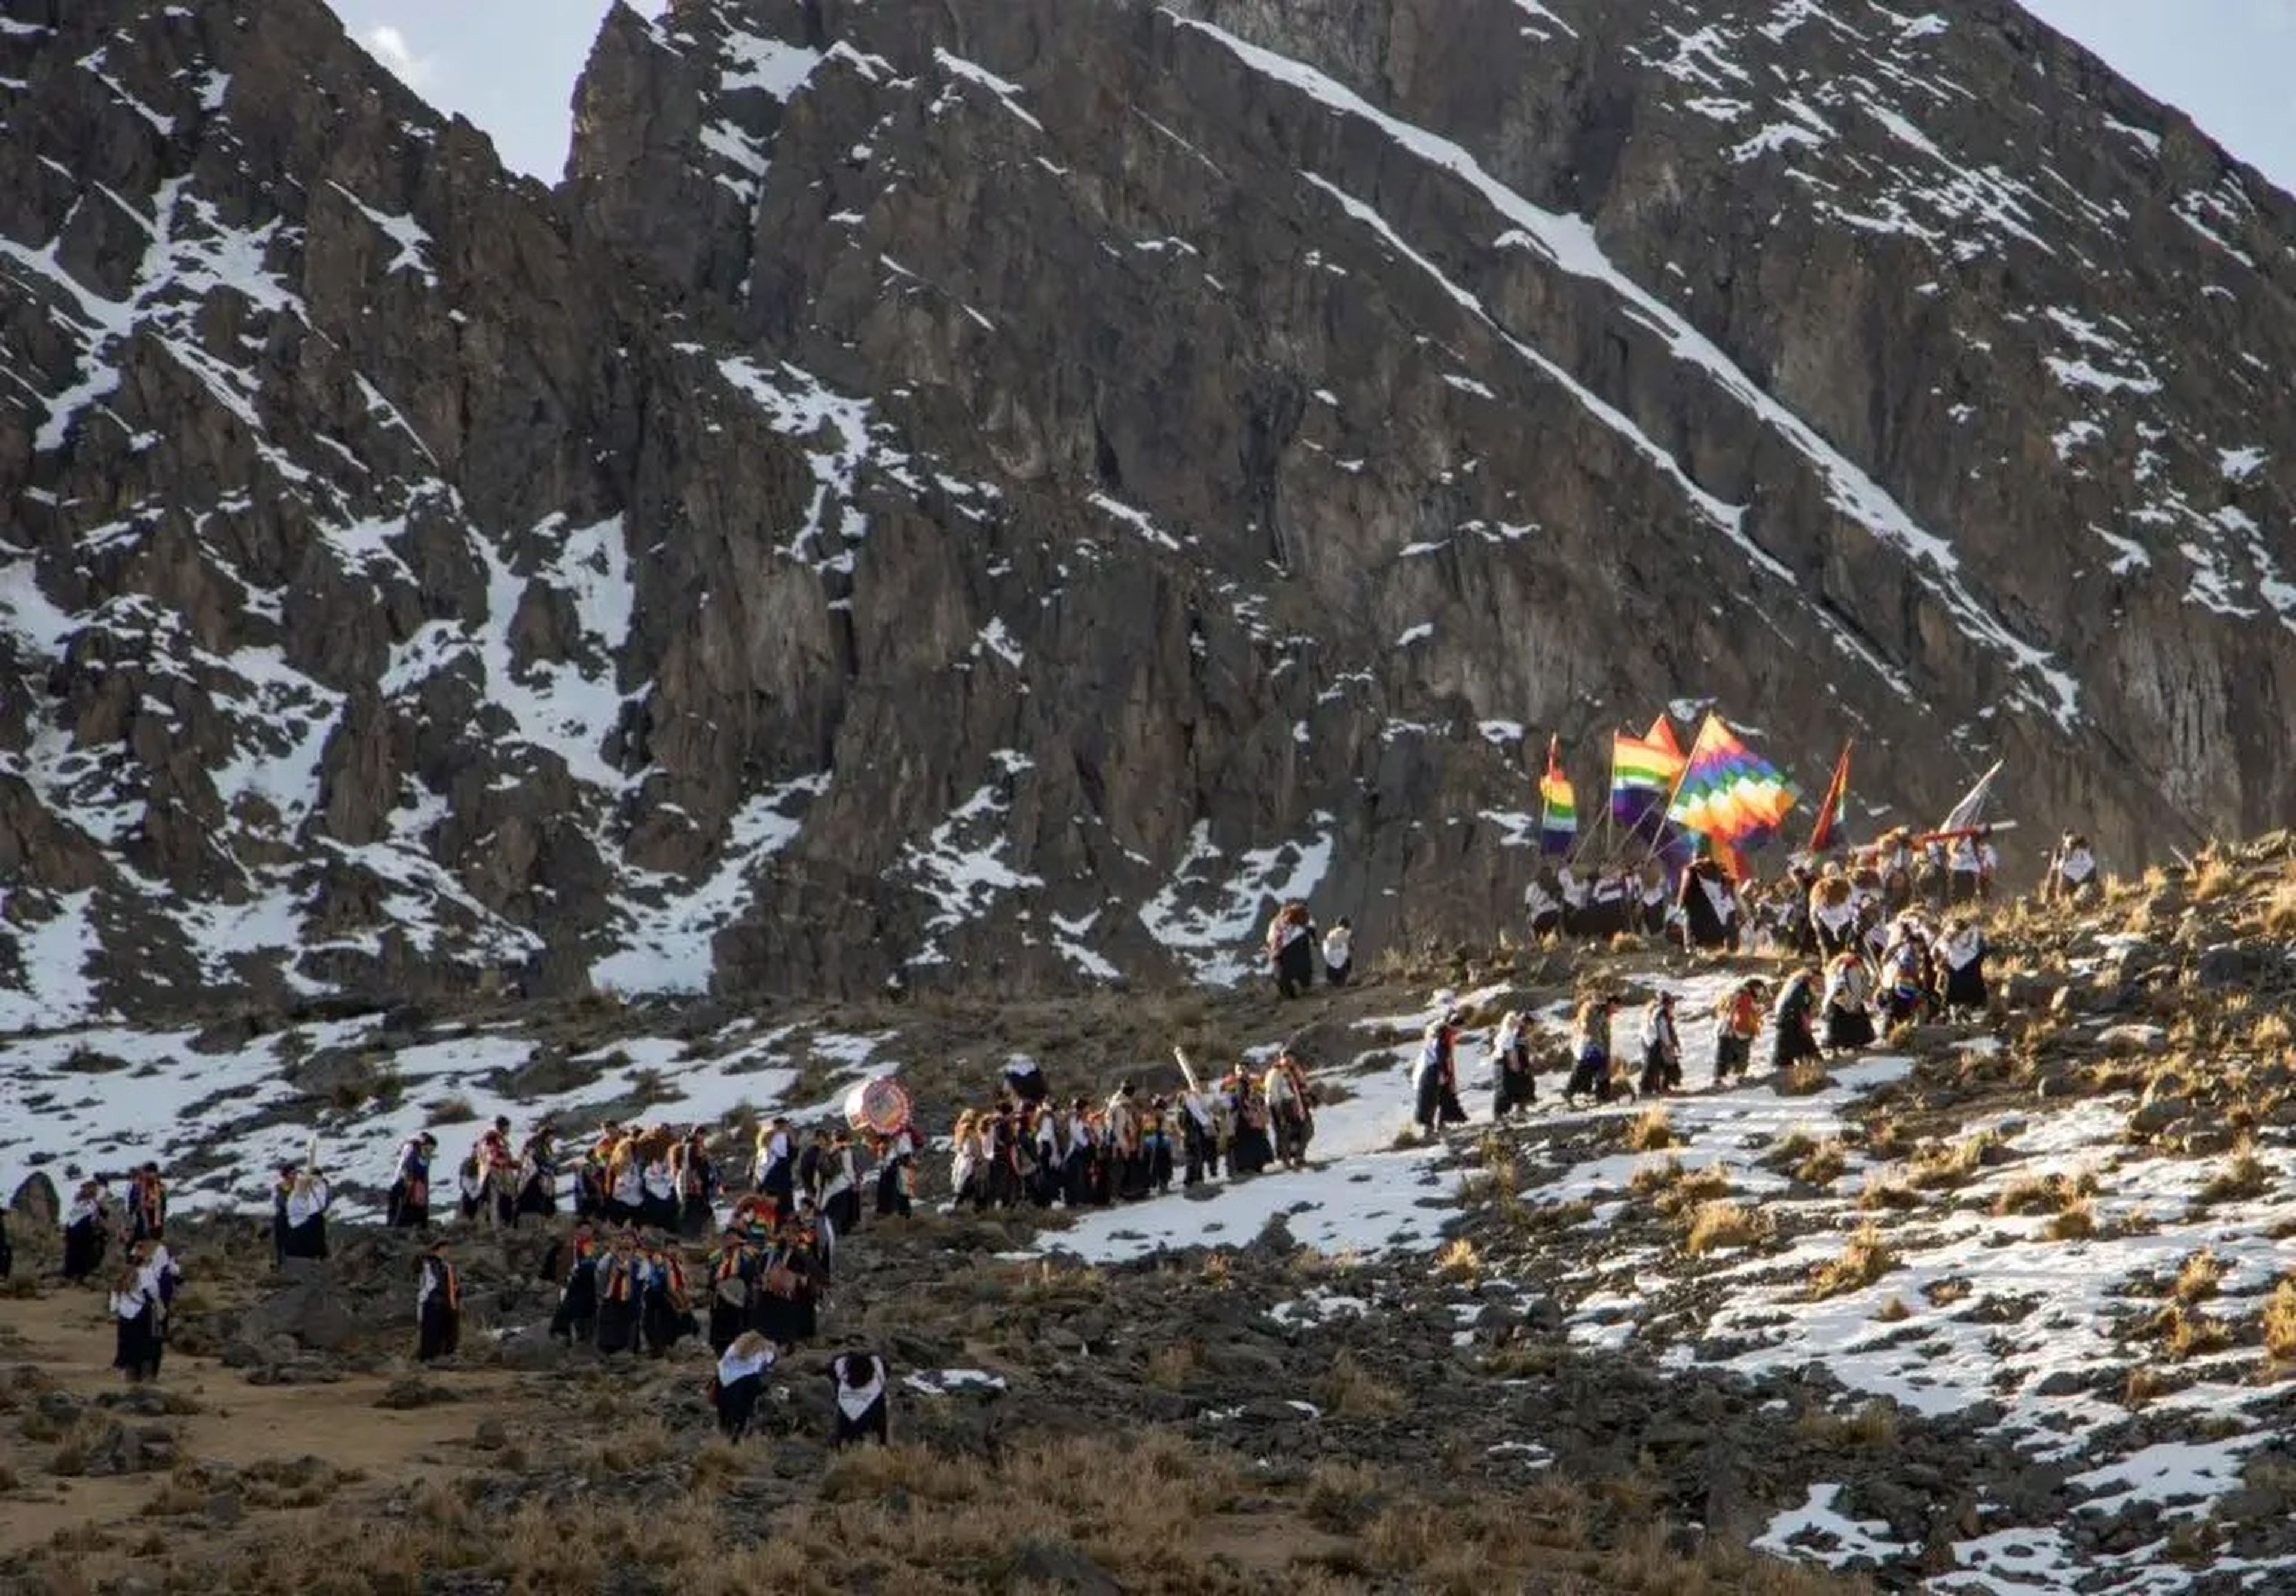 Las naciones indígenas de América del Sur celebran una festividad religiosa que data del siglo XVIII escalando las faldas del Monte Sinakara.